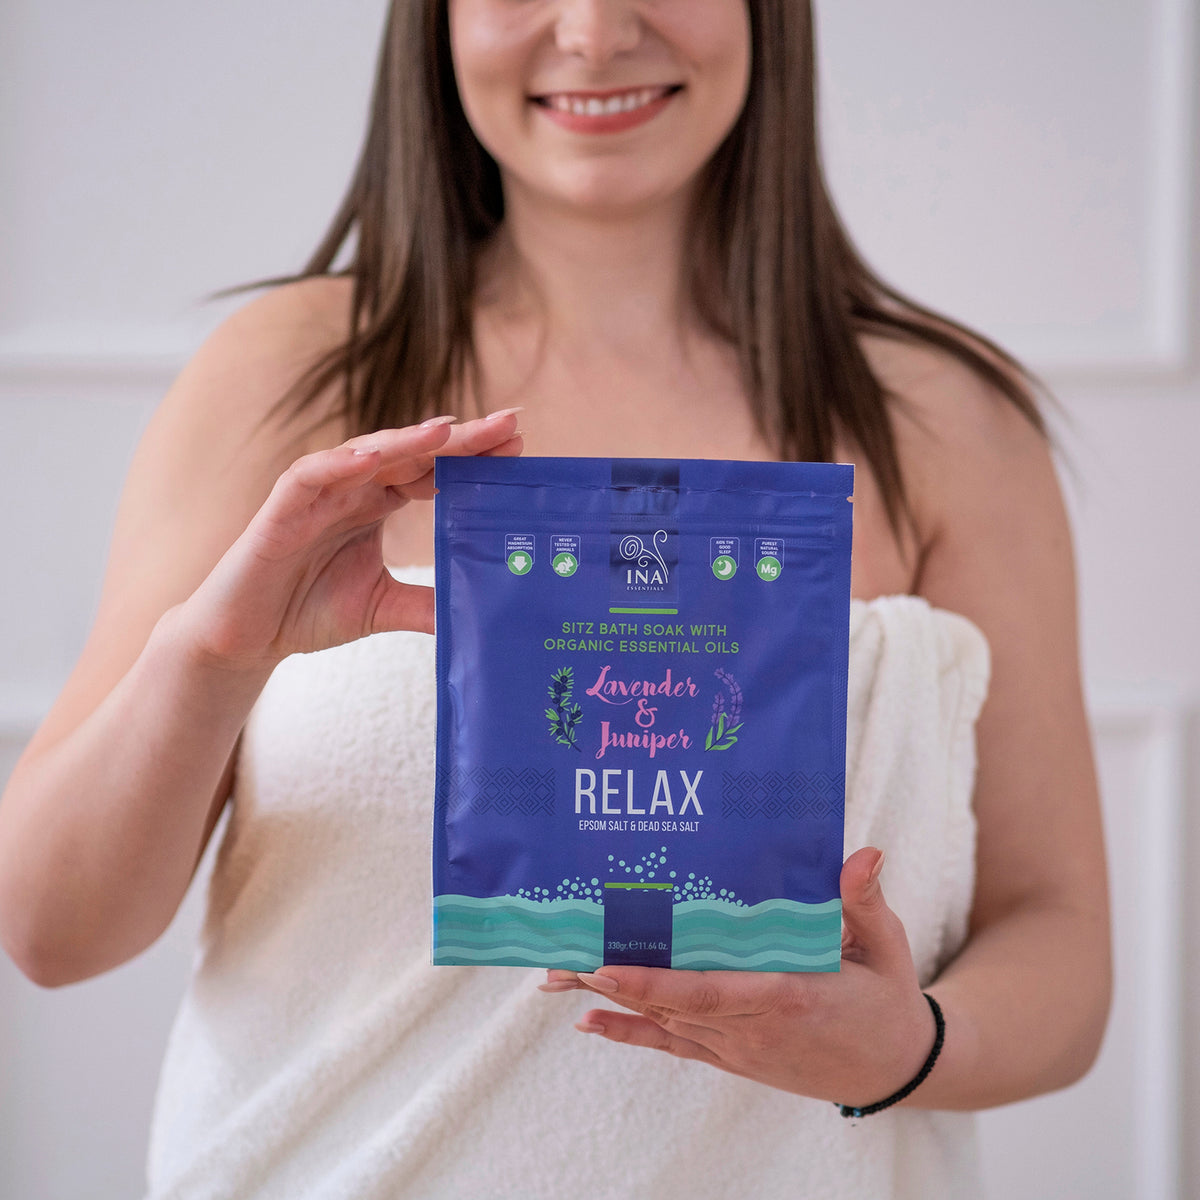 Relax - Sales de Baño con Lavanda y Enebro para Relajación y Alivio del Estrés